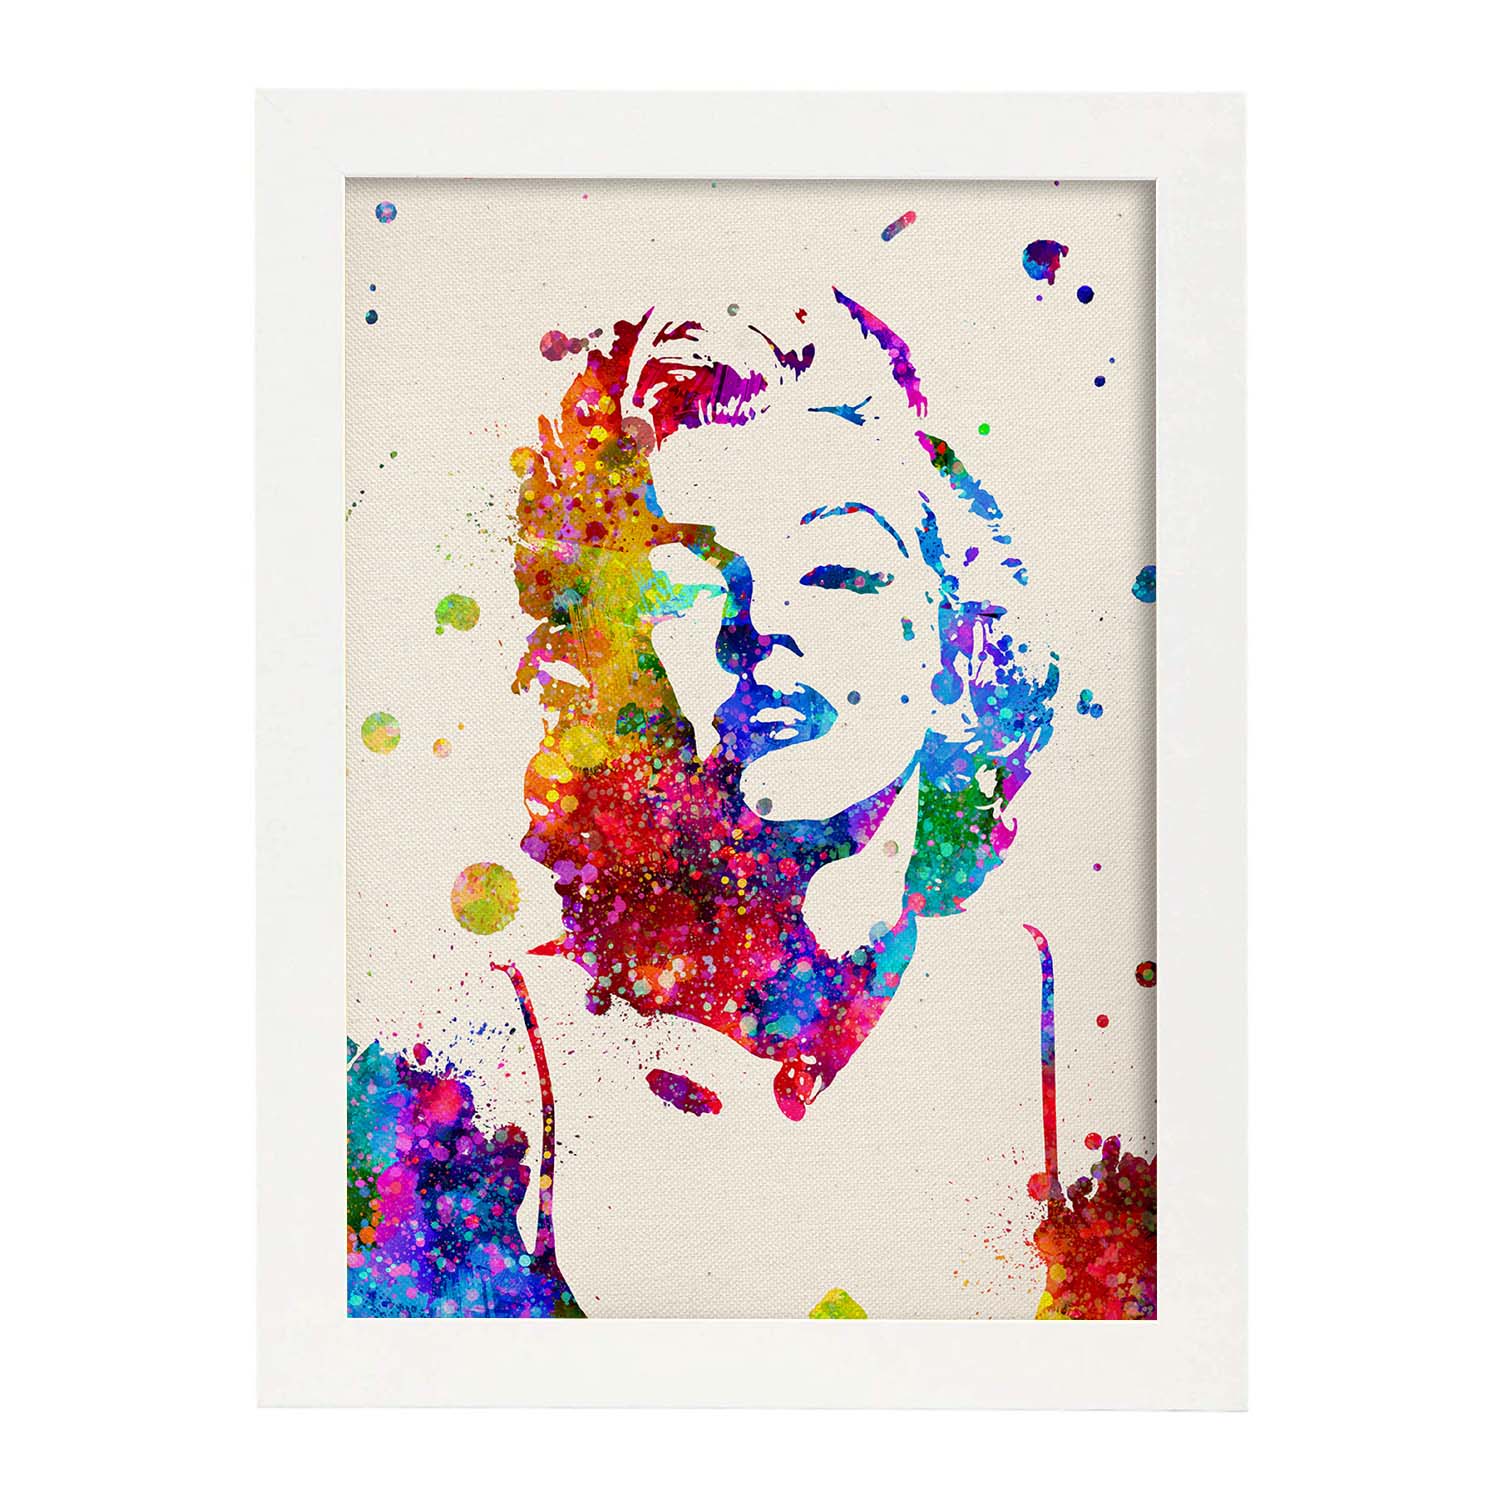 Poster imagen de Marilyn Monroe. Posters con diseño acuarela de famosos, actores, músicos-Artwork-Nacnic-A4-Marco Blanco-Nacnic Estudio SL